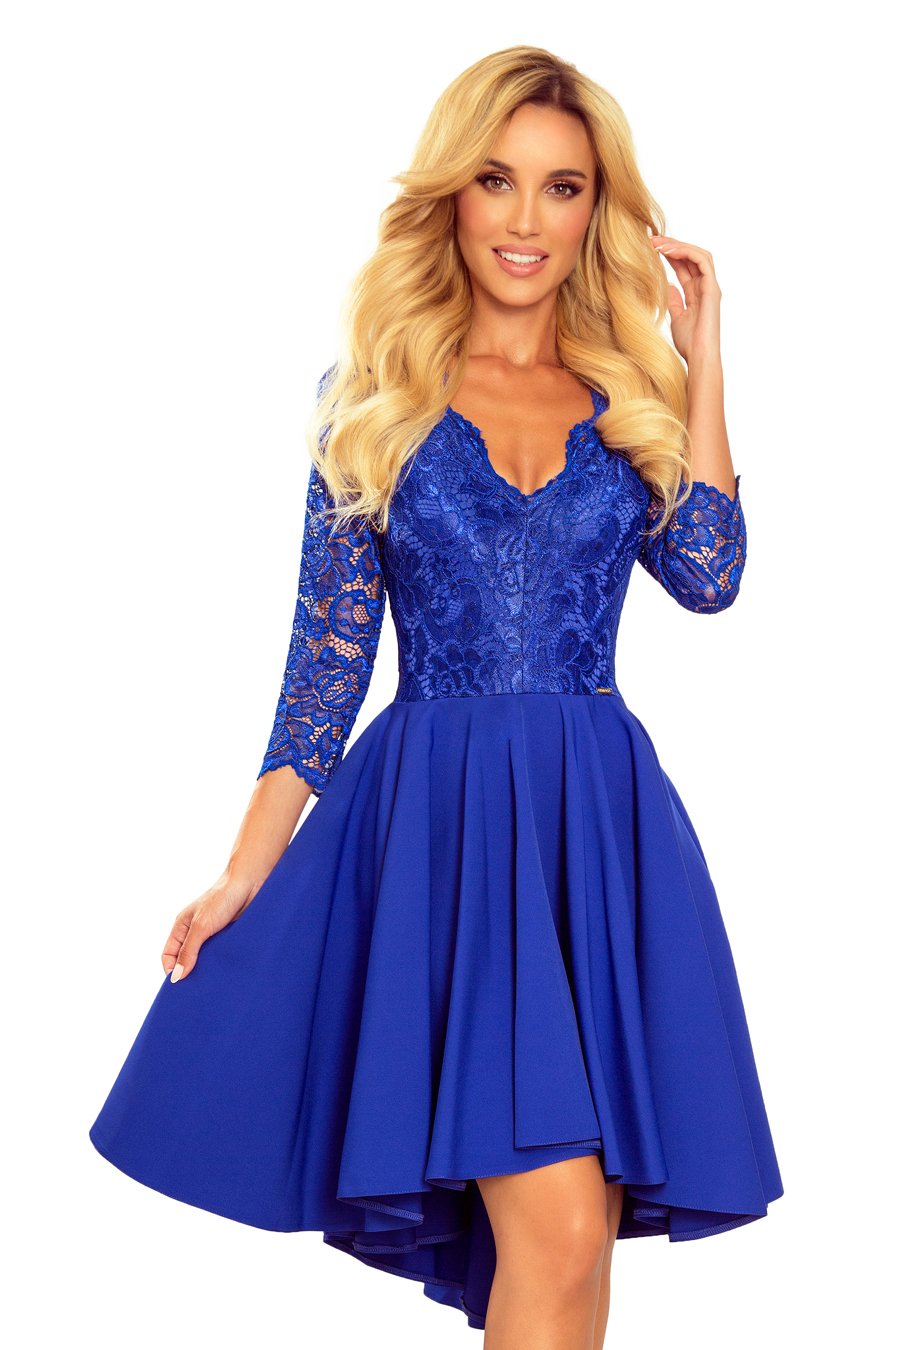 Γυναικείο φόρεμα Dottie, Μπλε 2